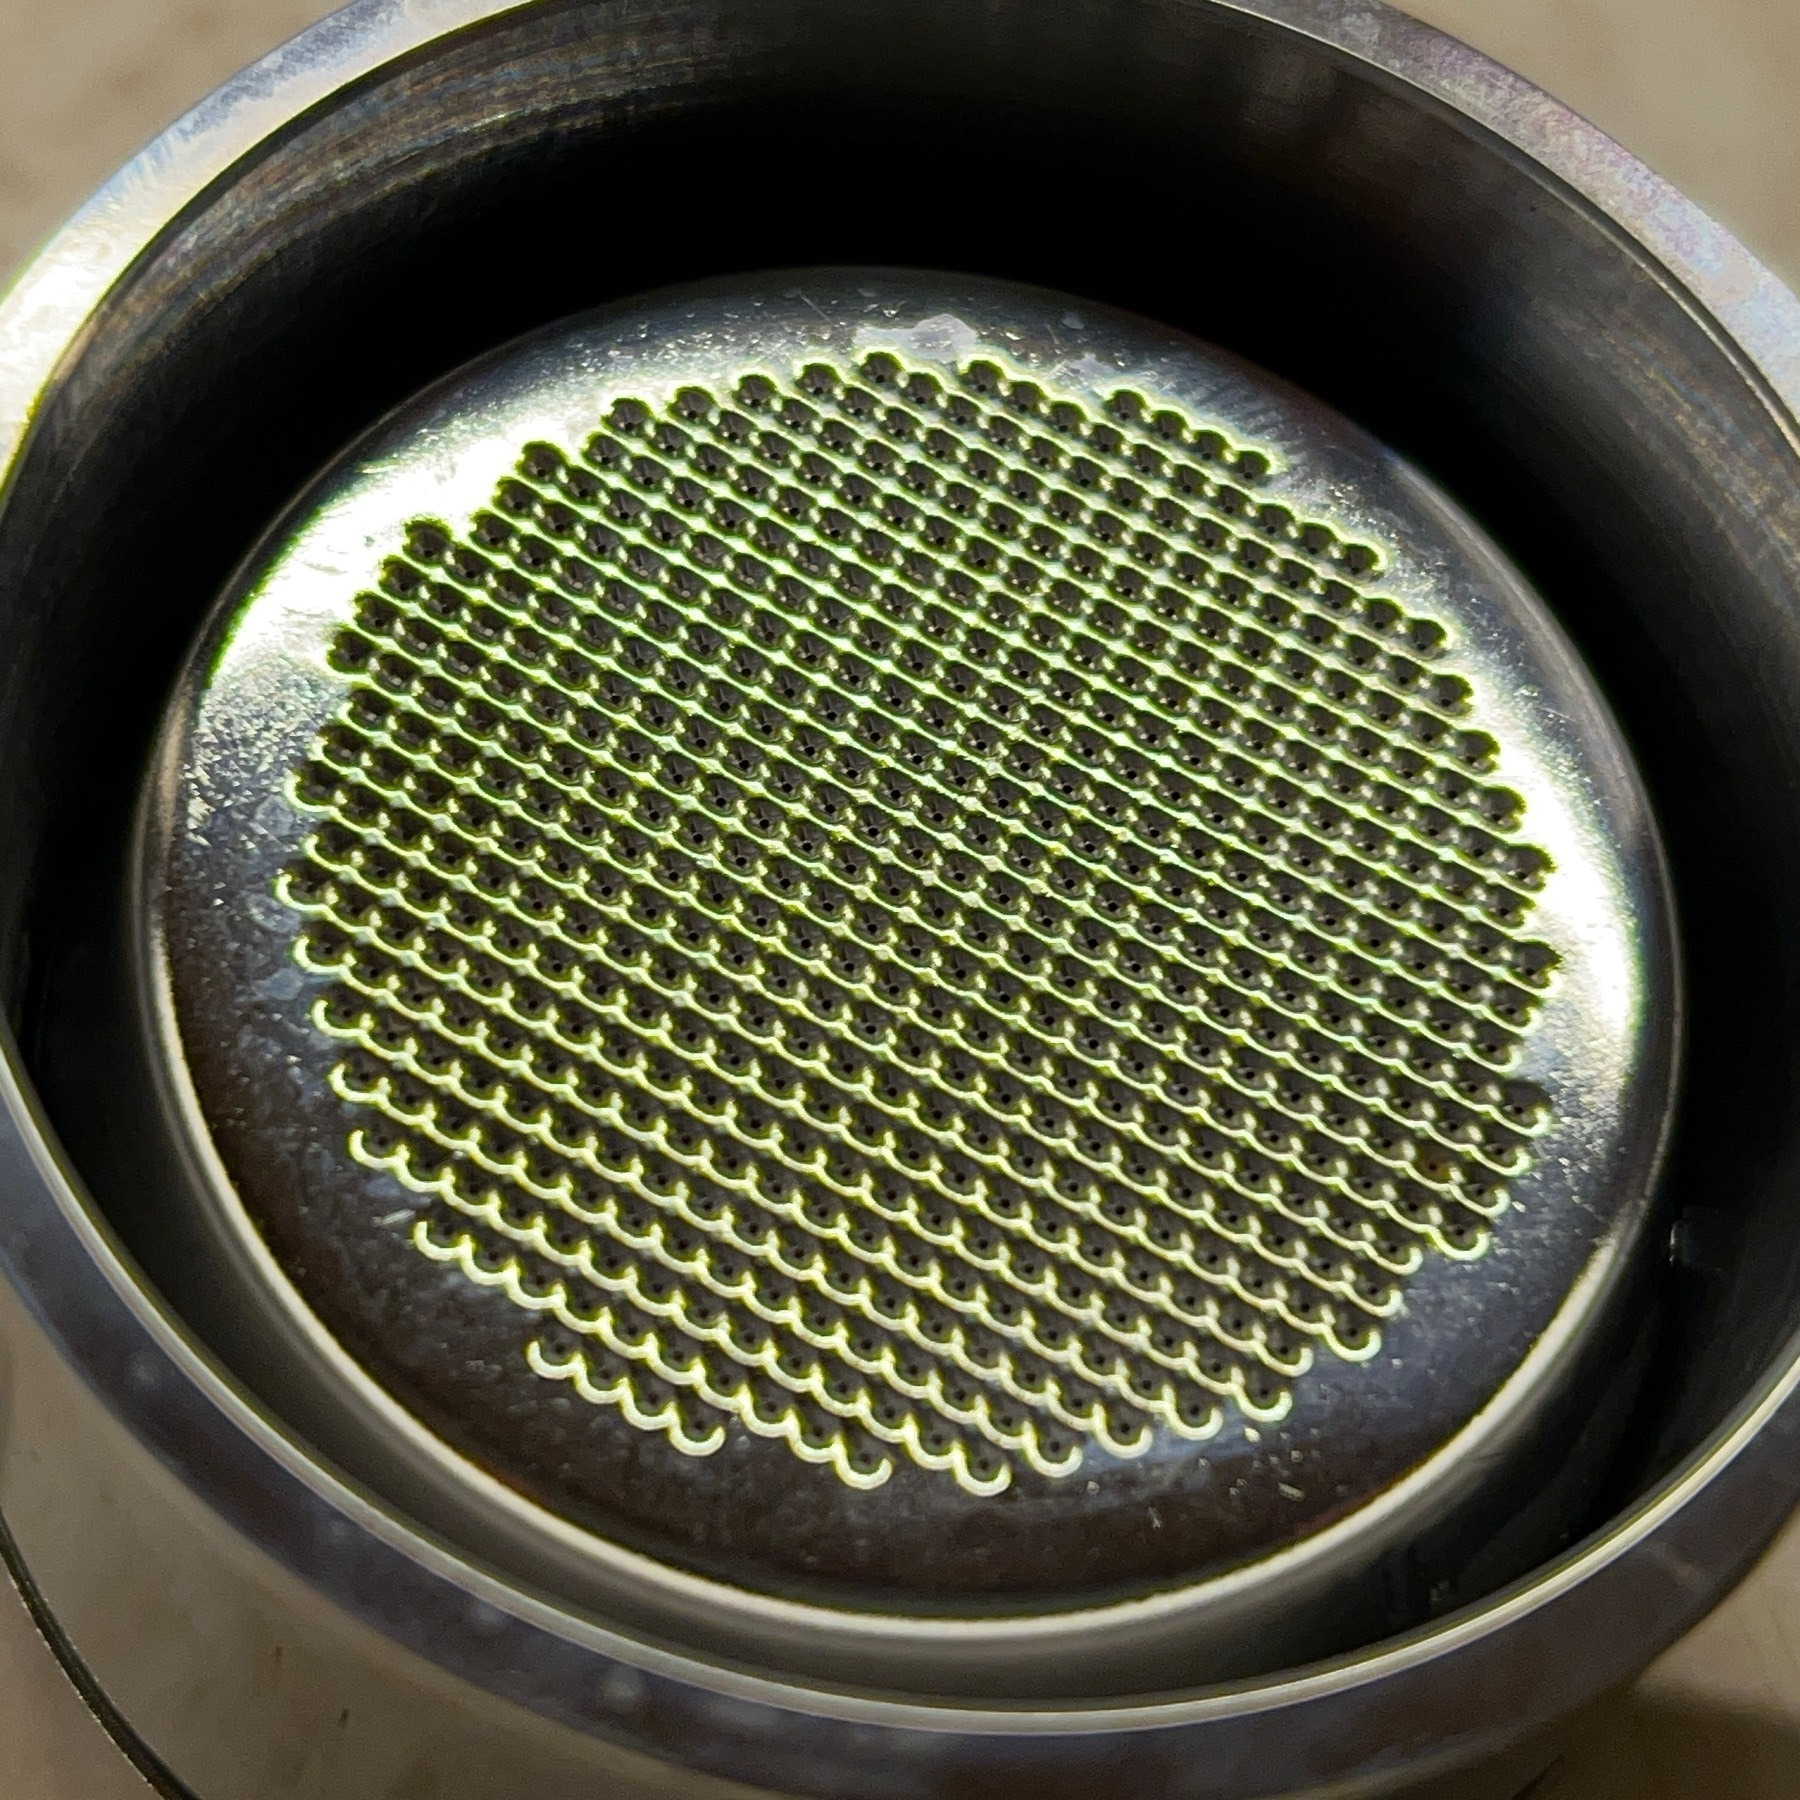 Silver metal espresso filter in filter holder. 